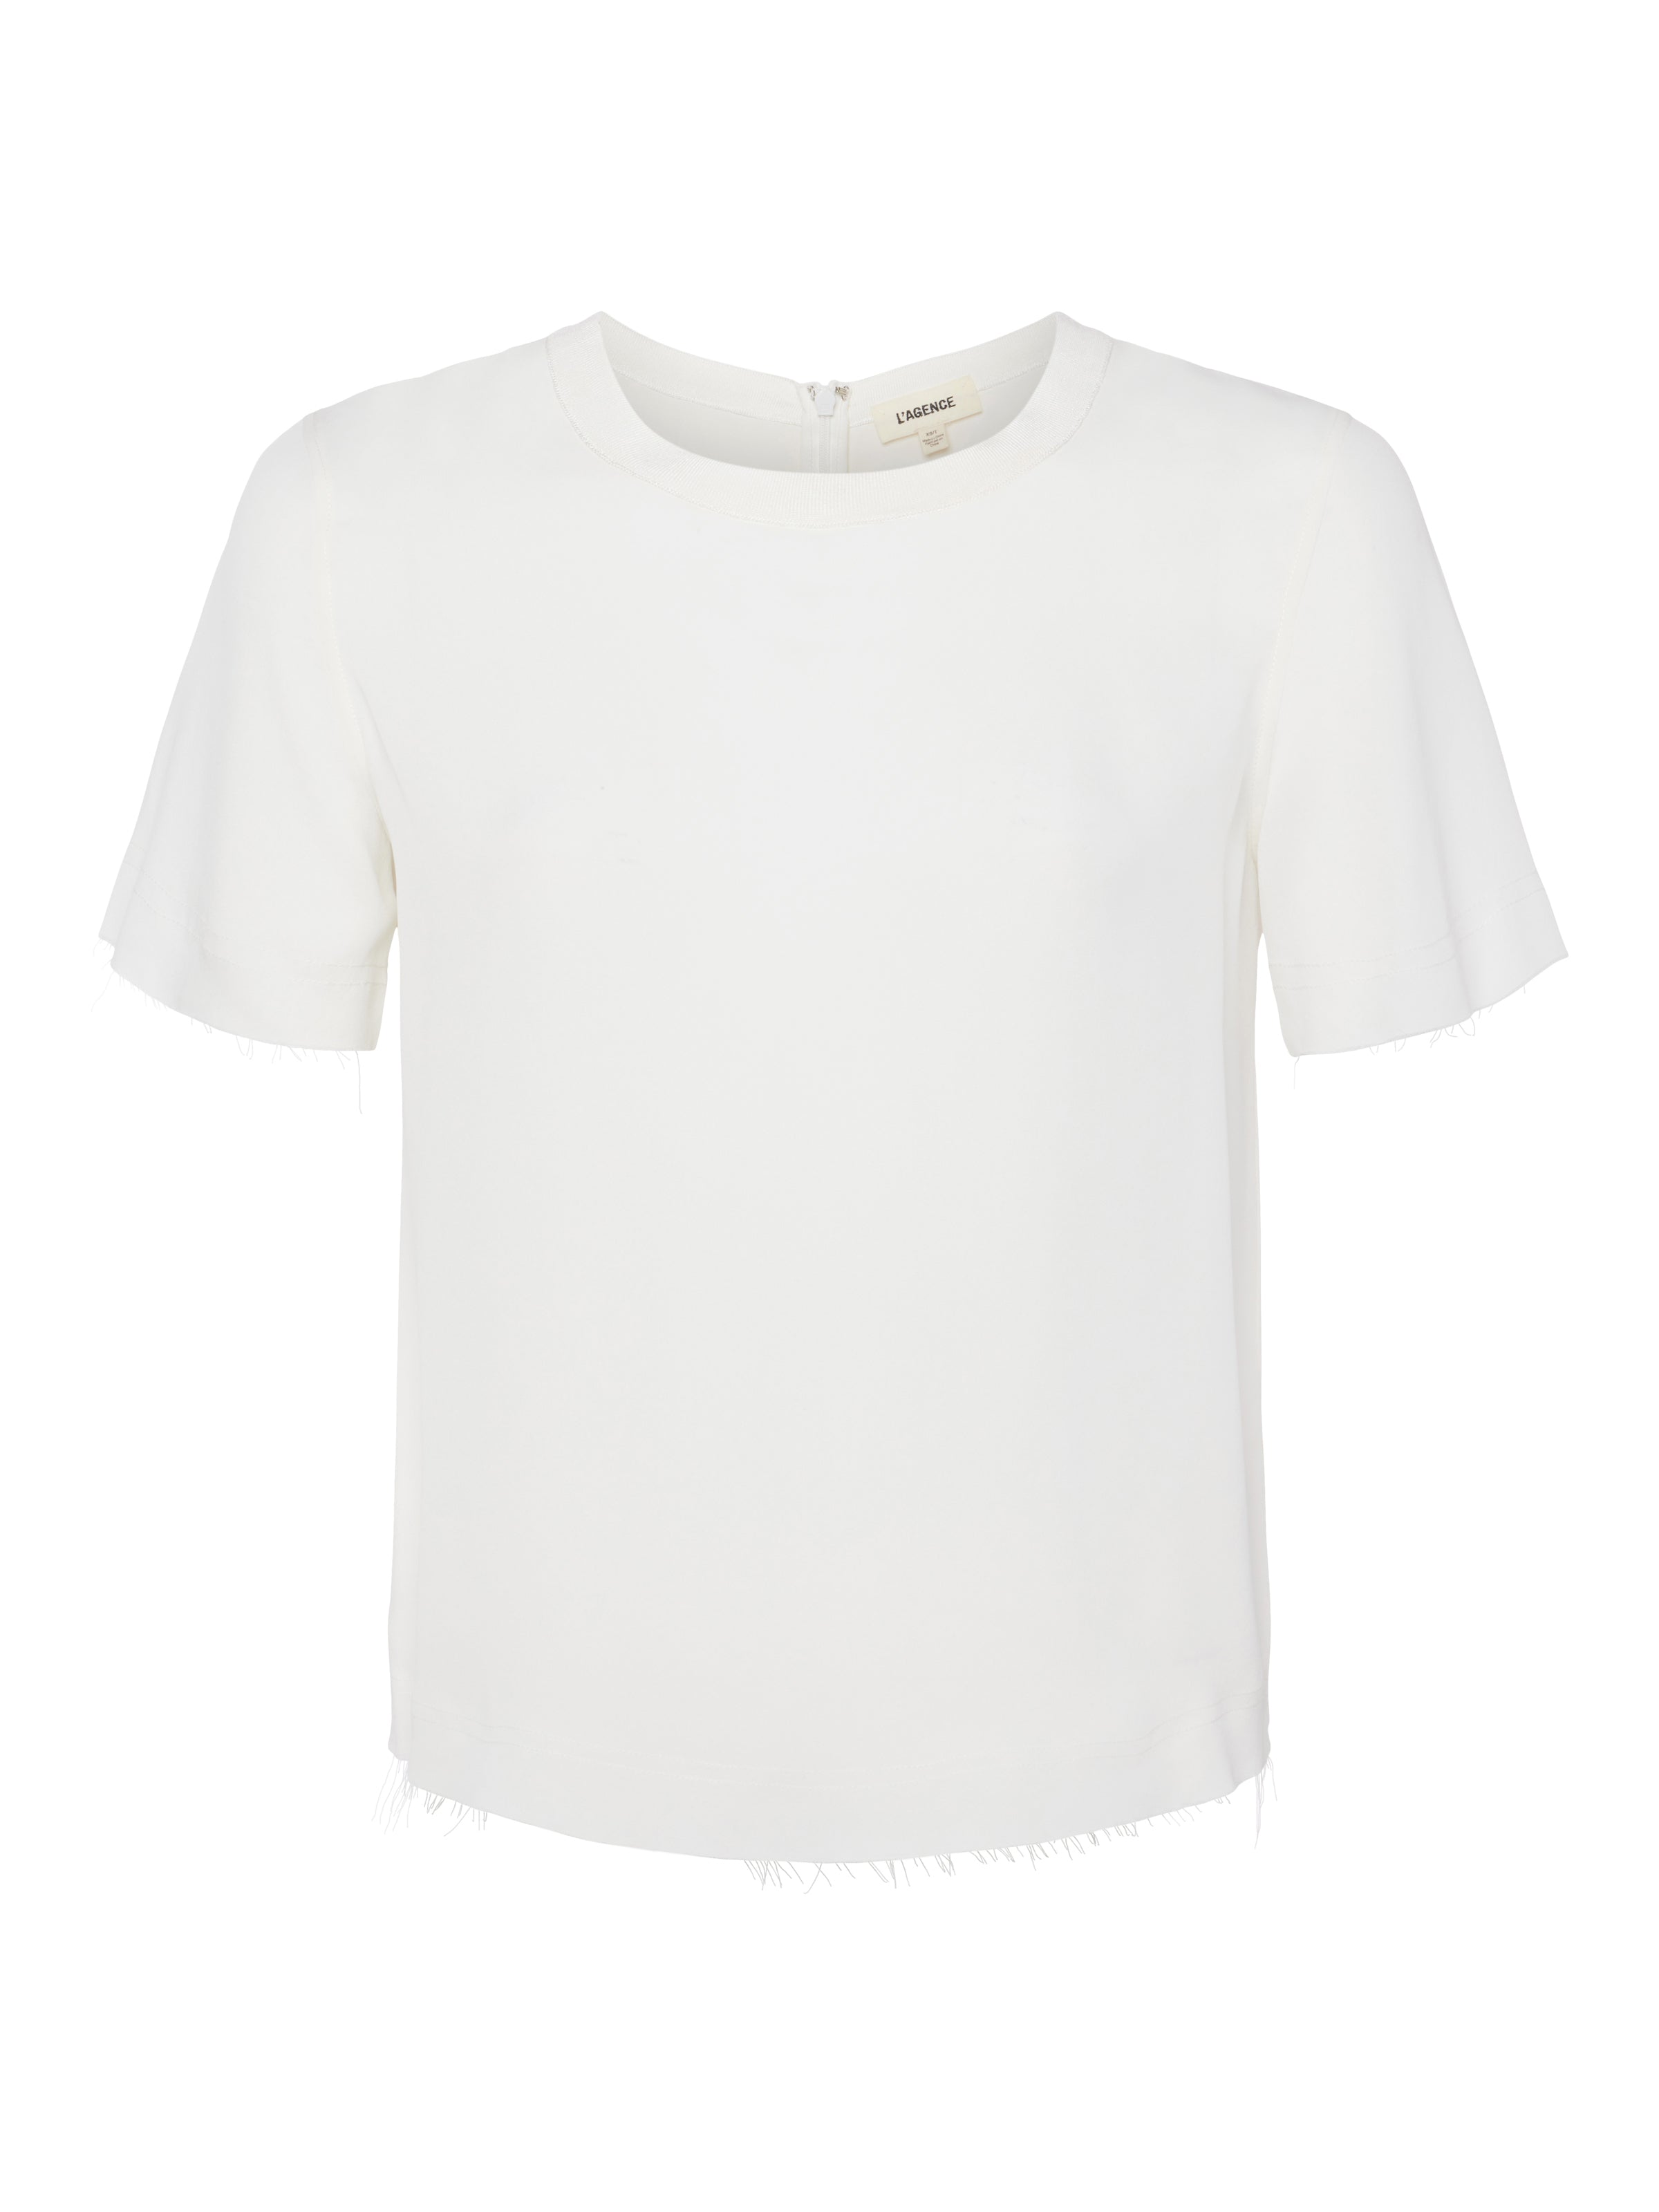 Suzette Silk T-Shirt in White